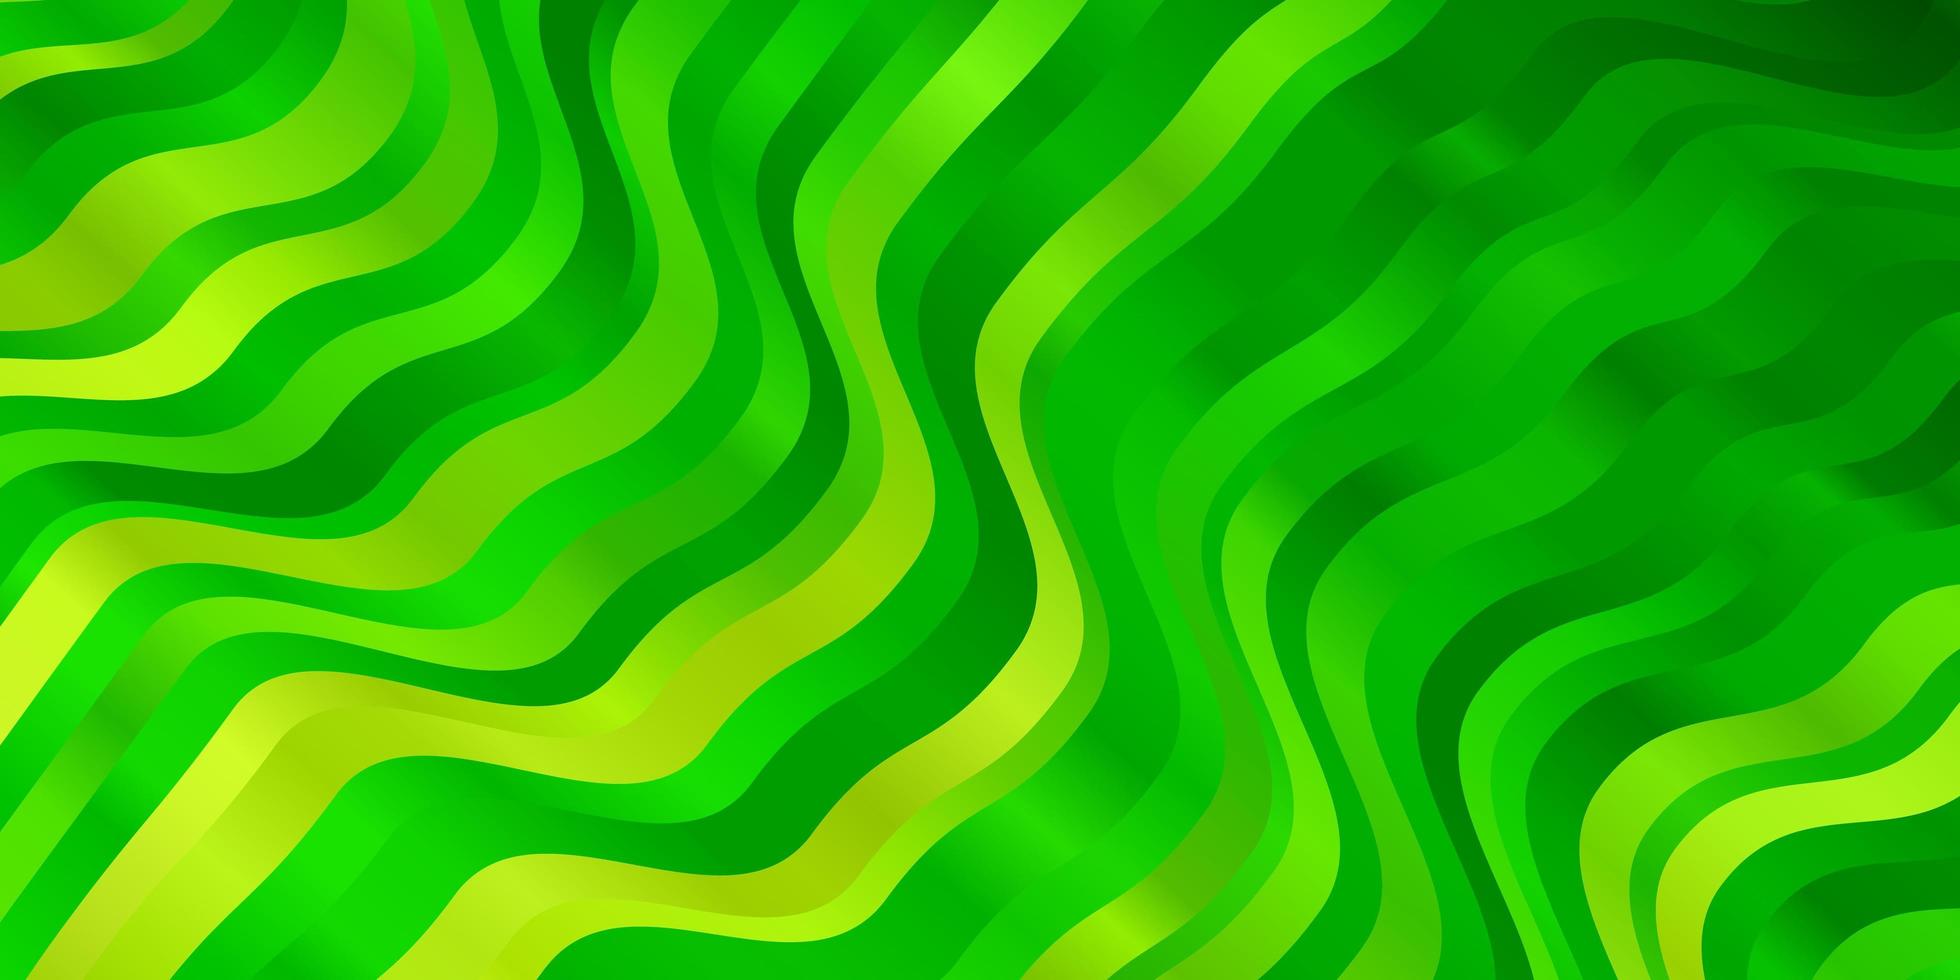 fundo vector verde claro com linhas dobradas.